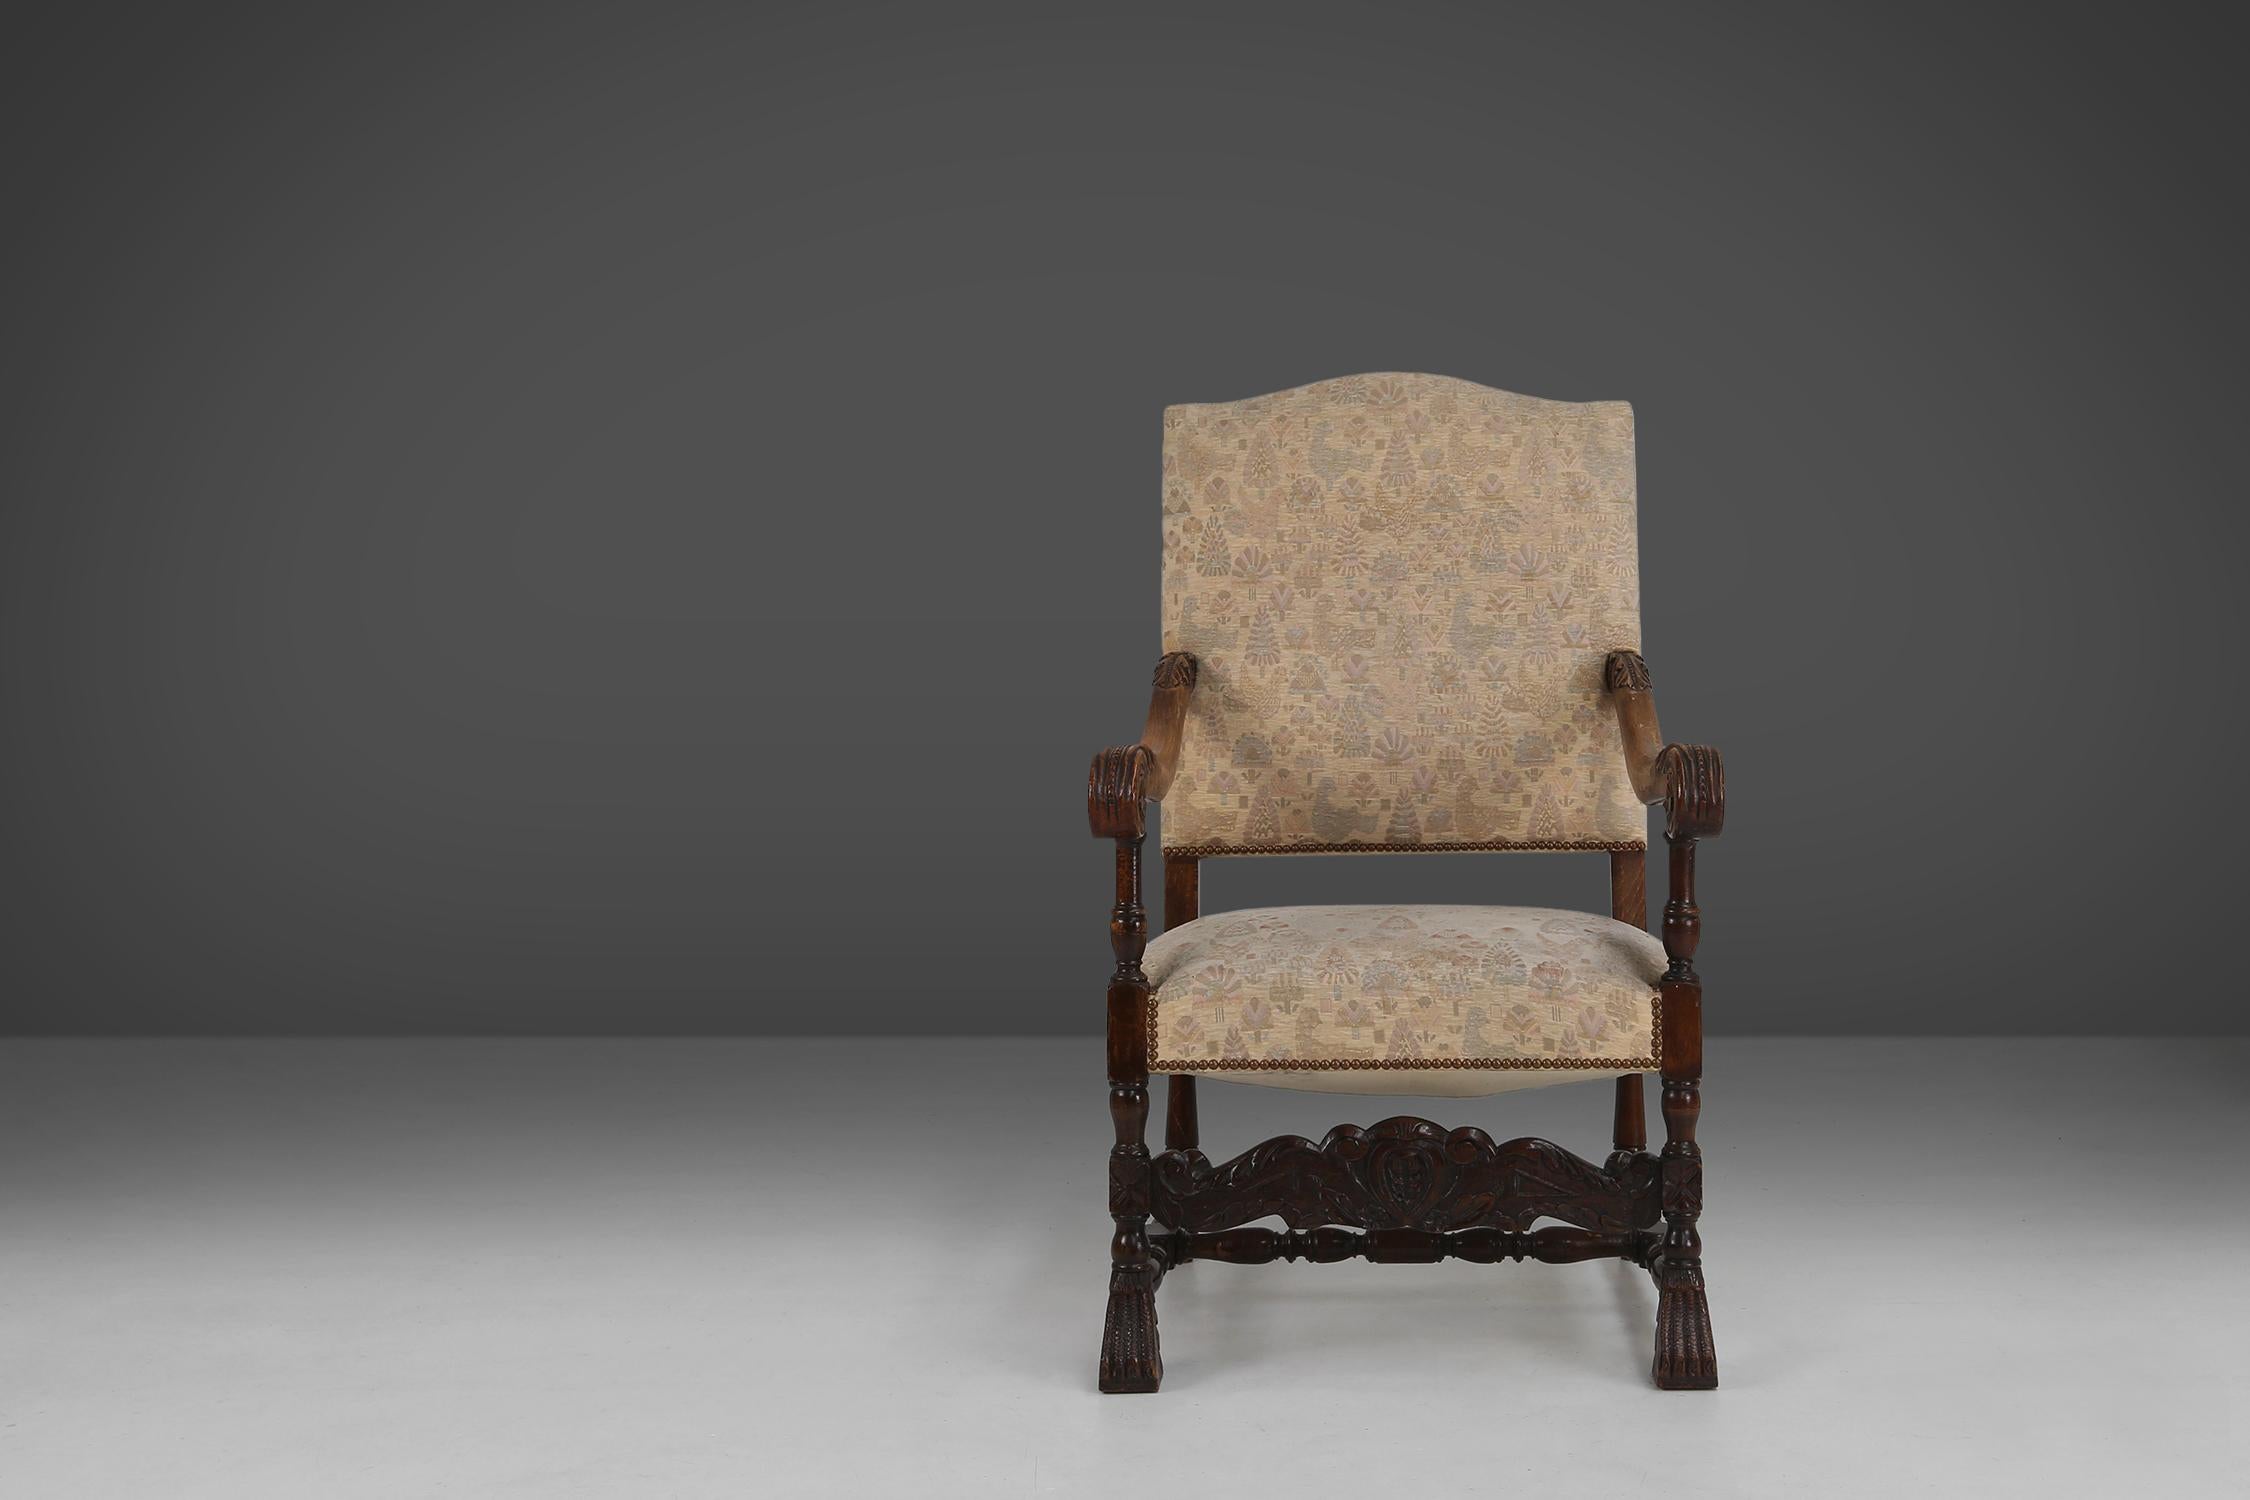 Ce magnifique fauteuil trône du XIXe siècle est fabriqué en bois de chêne et revêtu d'un tissu au motif ornemental.

Le bois est décoré de fines sculptures de style Renaissance, qui témoignent du savoir-faire et du goût des artisans. La chaise est